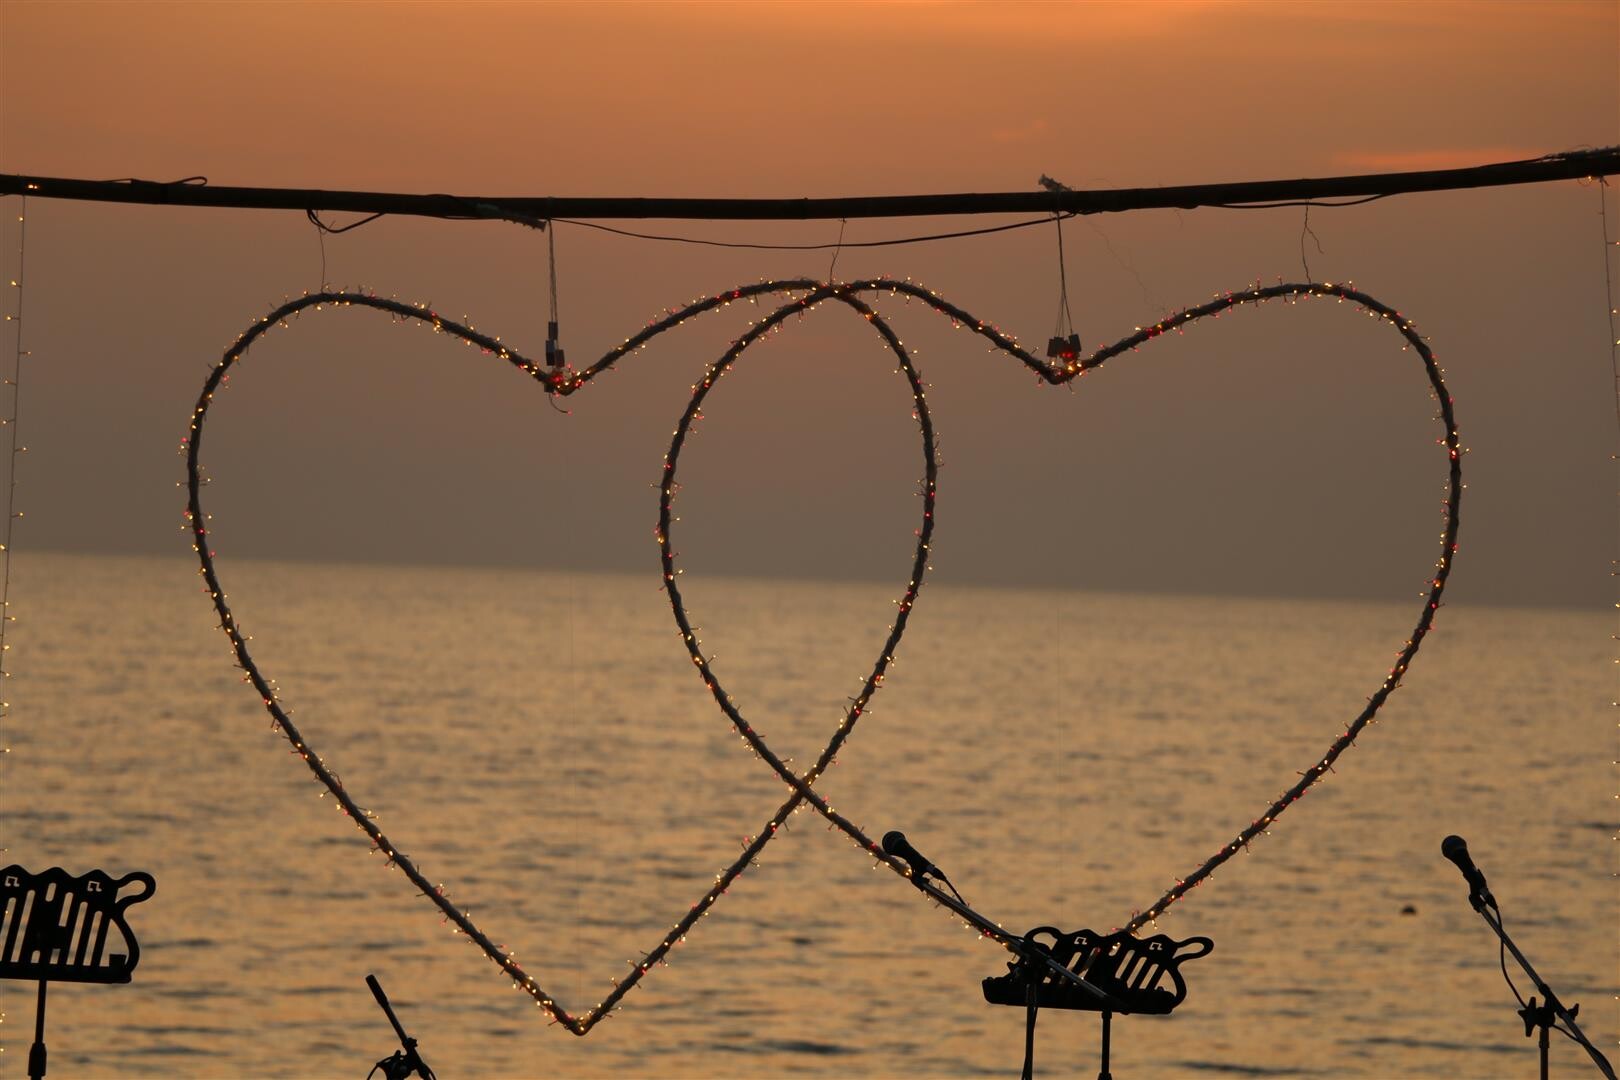 ฉลองวันแห่งความรักริมชายหาดที่ลยานะ รีสอร์ท แอนด์ สปา เกาะลันตา